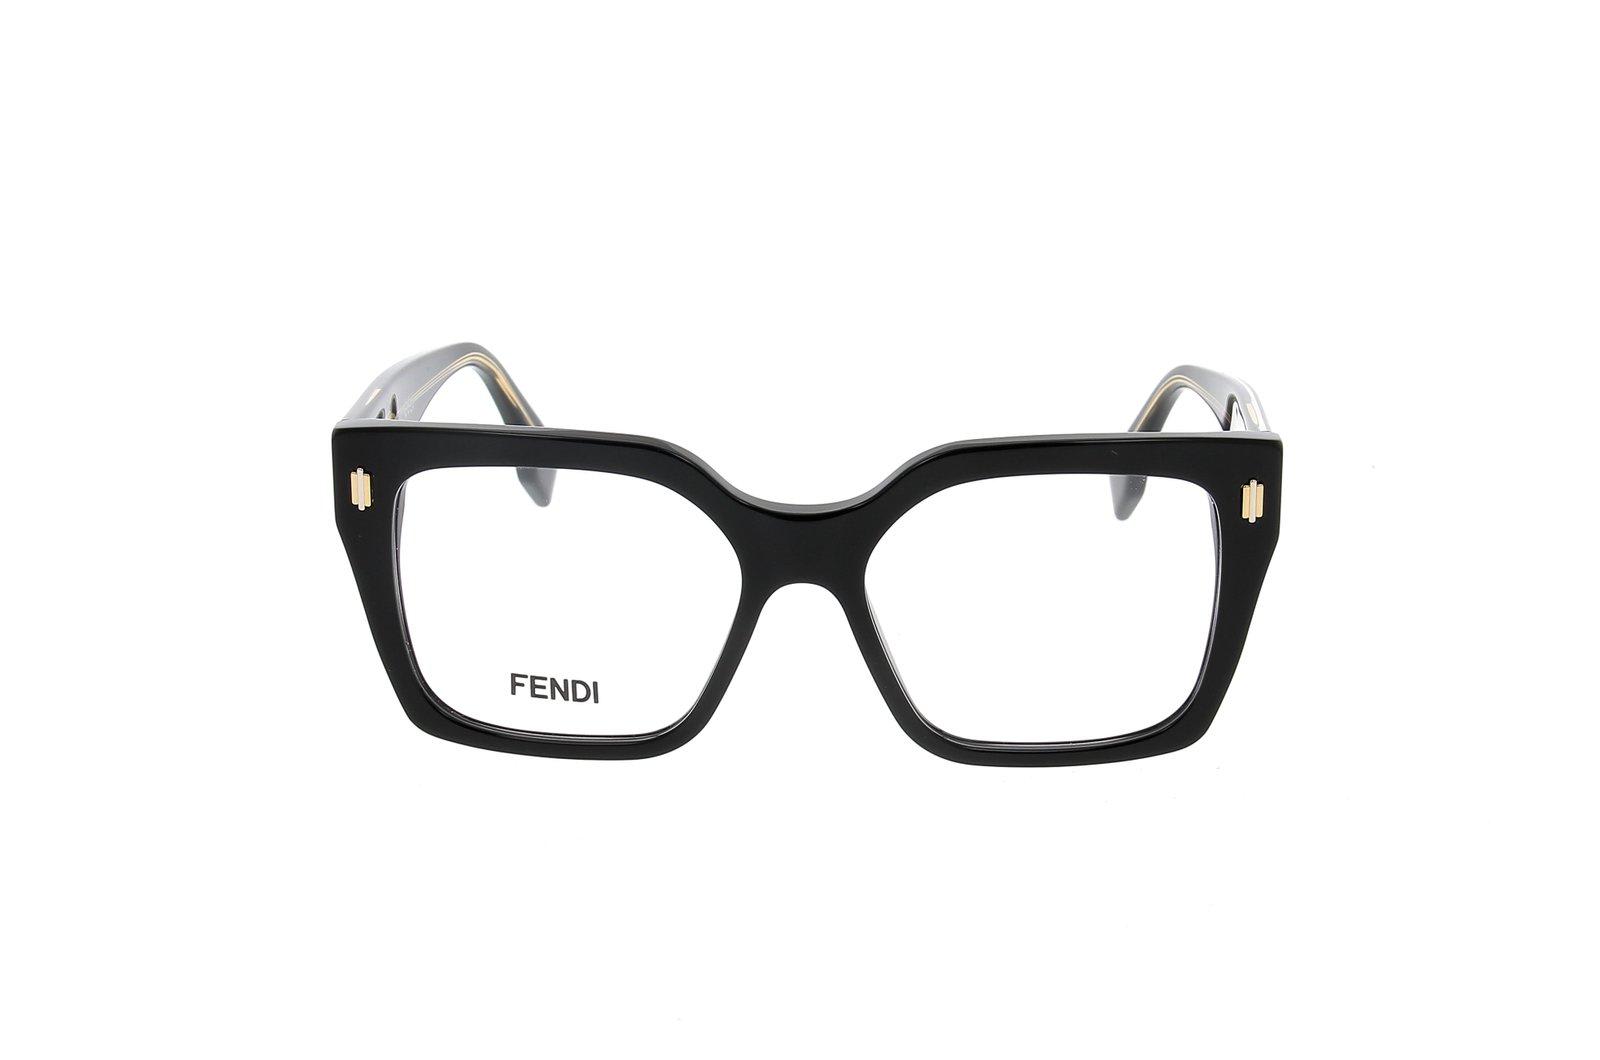 Fendi Square Frame Glasses In Shiny Black